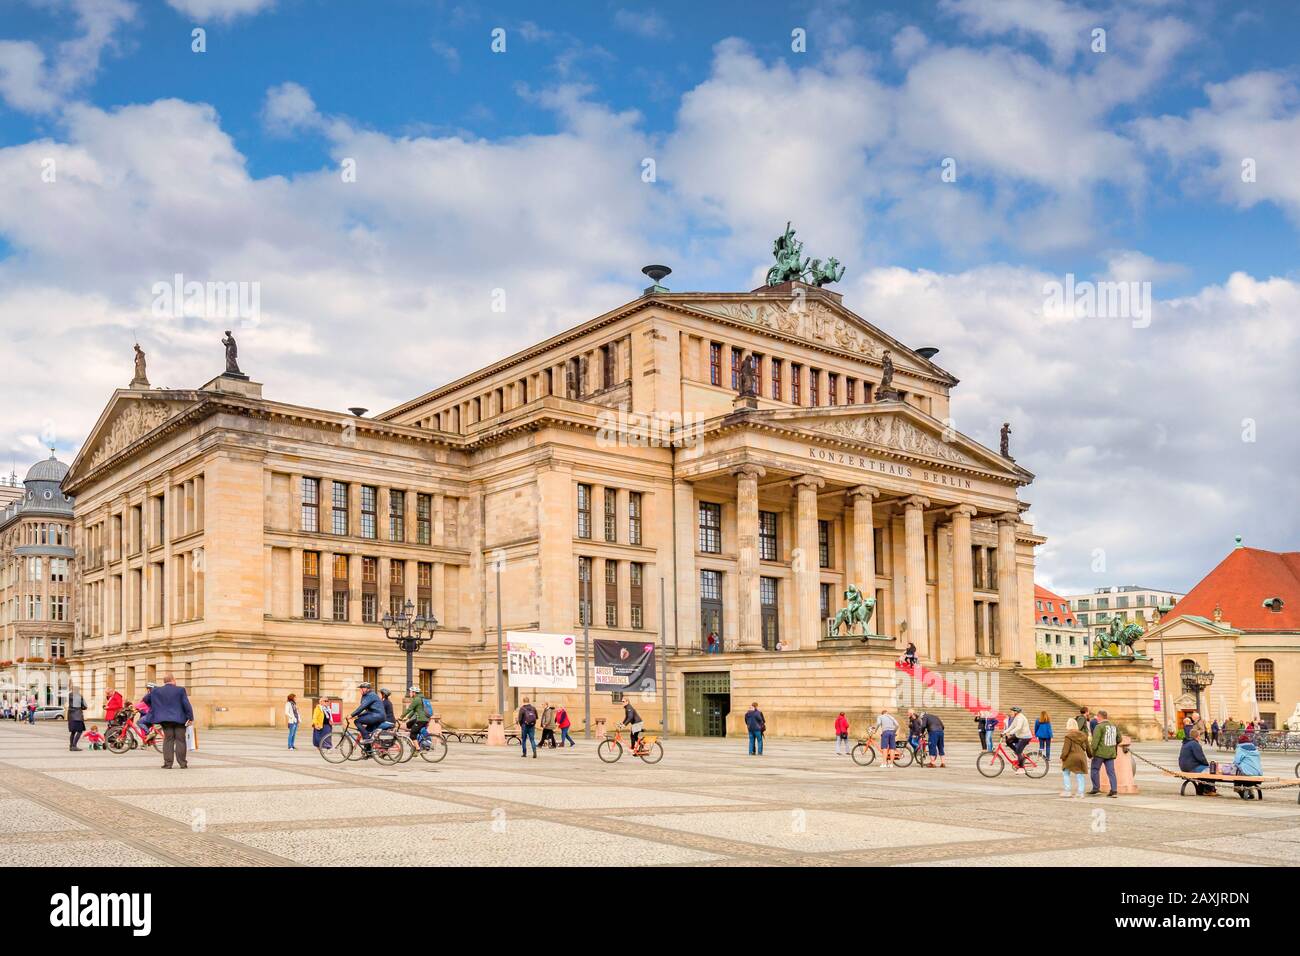 22 settembre 2018: Berlino, Germania - Konzerthaus in Piazza Gendarmenmarkt, con visite turistiche e moto in piazza, in un bel autunno Foto Stock